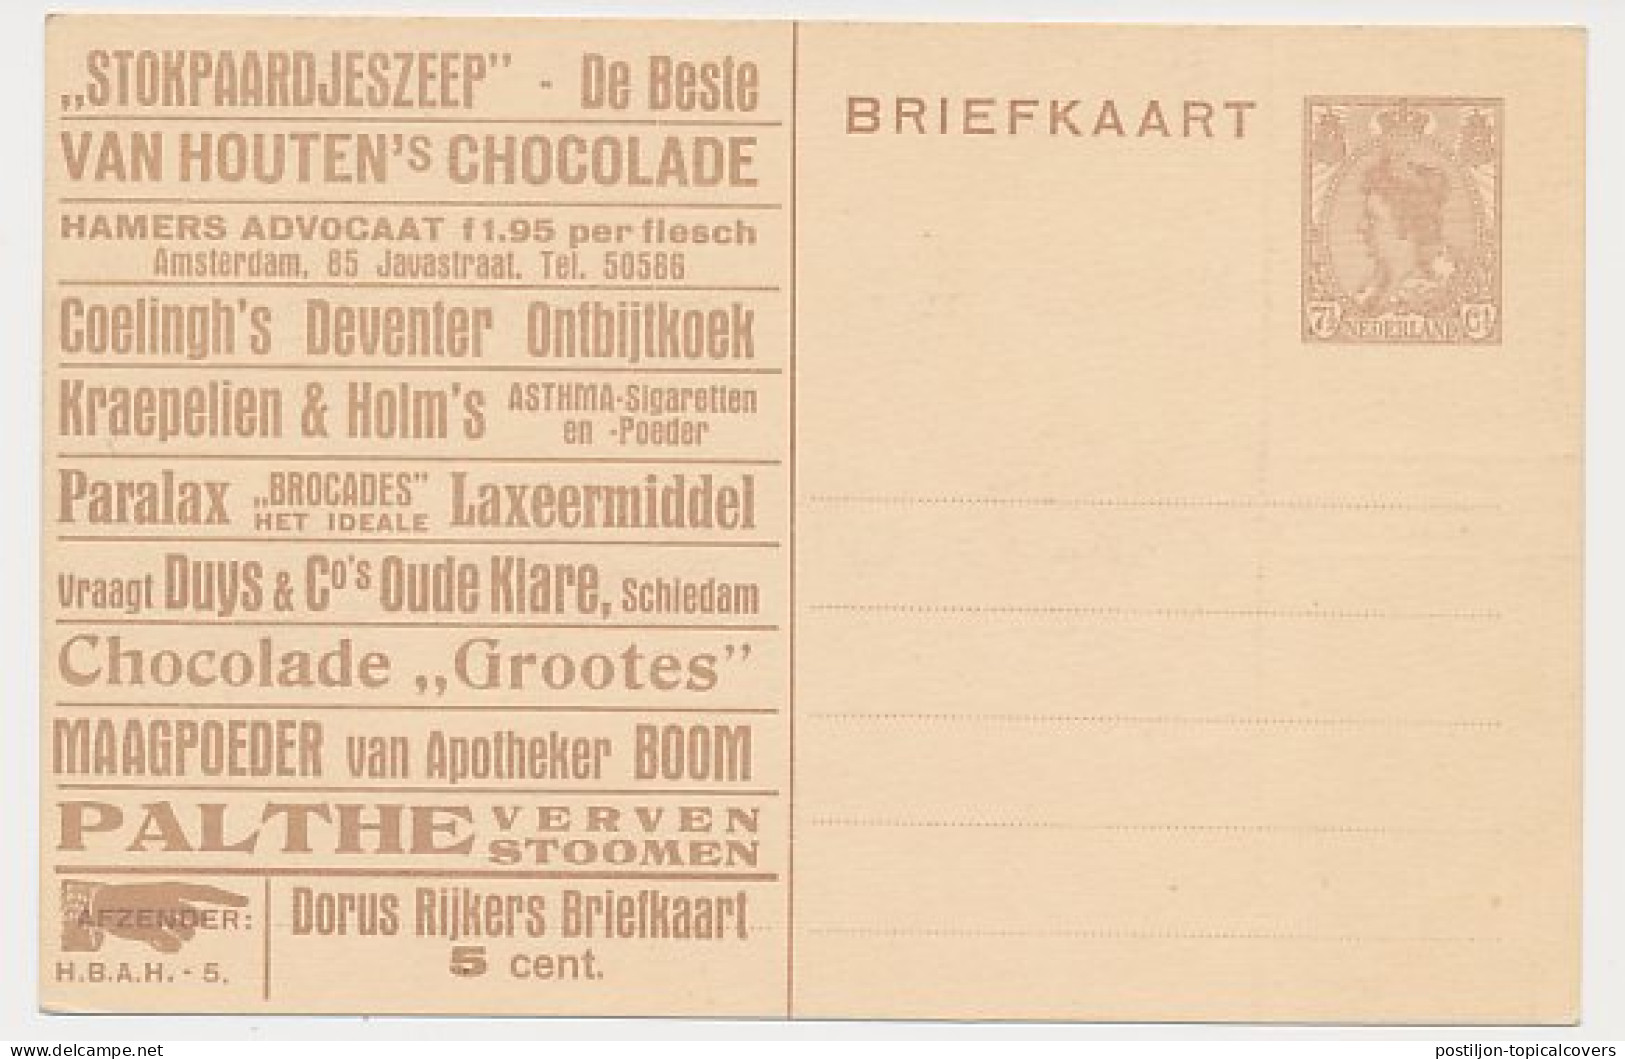 Particuliere Briefkaart Geuzendam DR7 - Entiers Postaux